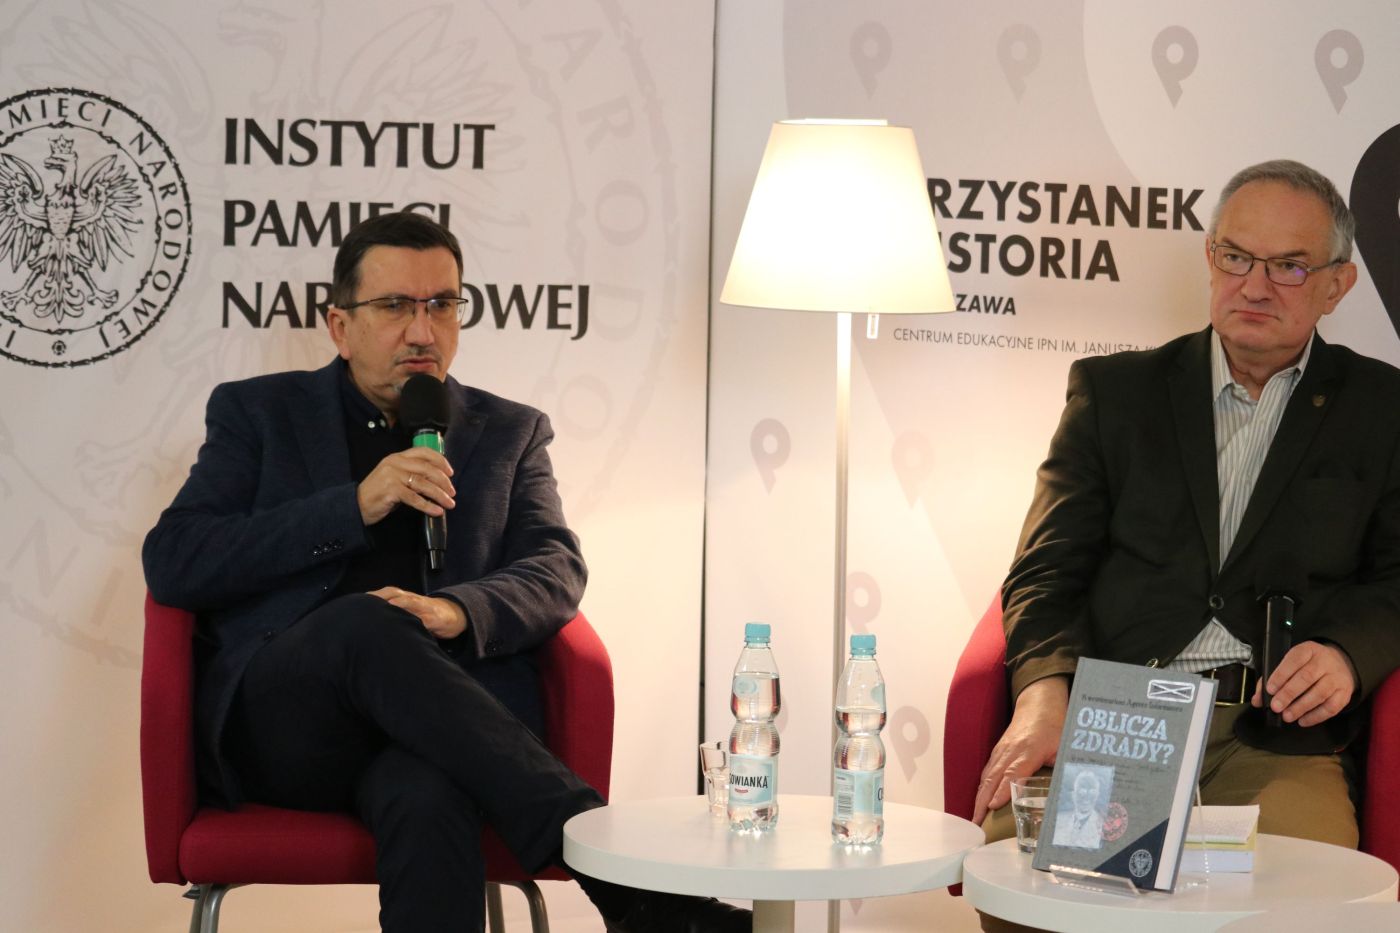 Dyskusja o książce „Oblicza zdrady?” – Warszawa, 17 listopada 2021. Fot. Aleksandra Wierzchowska (IPN)